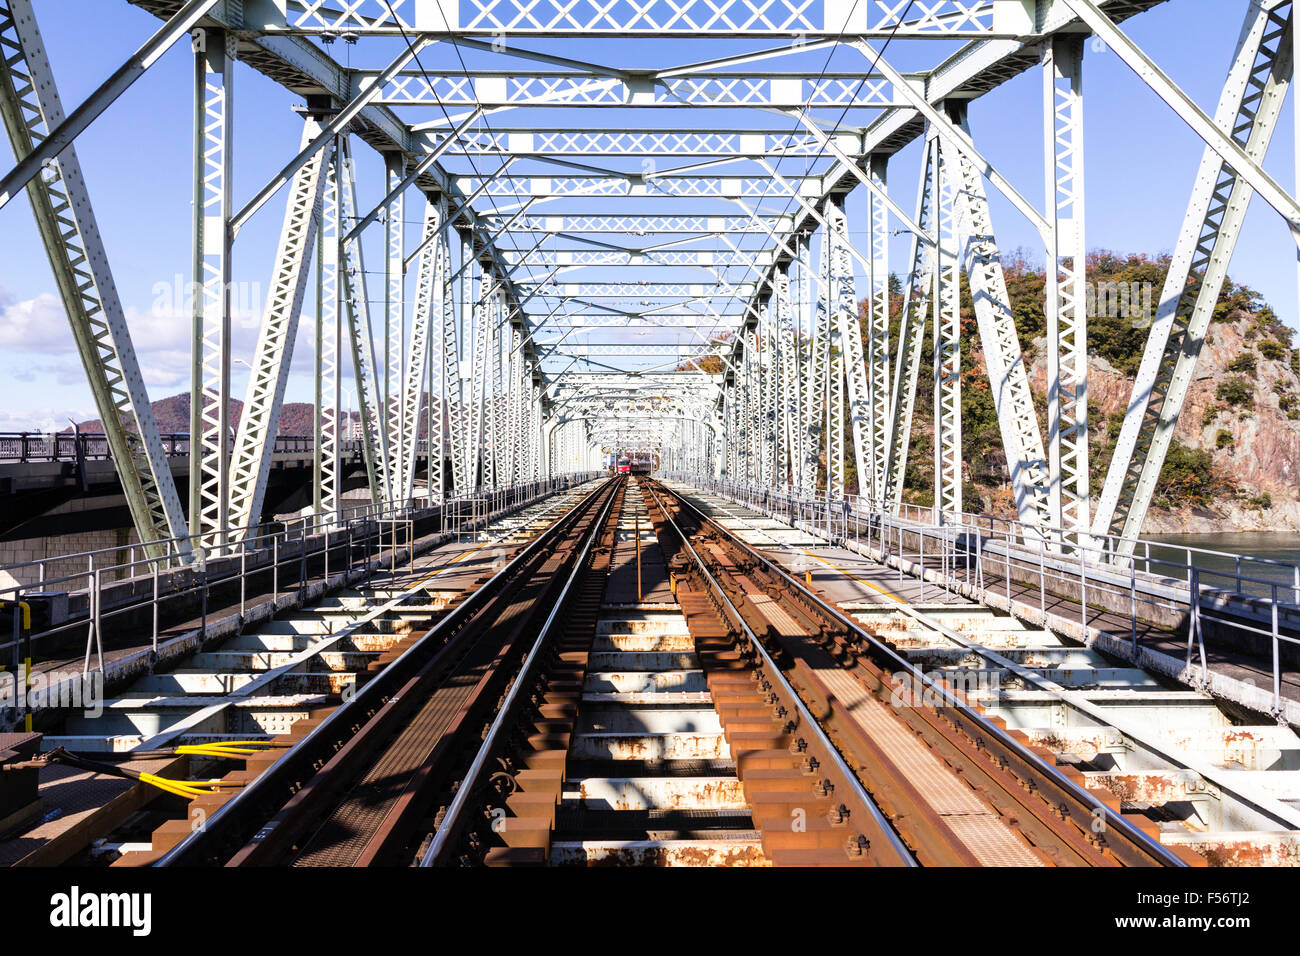 Giappone, Inuyama. Kiso Linea ferroviaria privata. Casella di trave in acciaio ponte ferroviario, vista lungo la parte interna del ponte, diurno, sole, cielo blu. Foto Stock